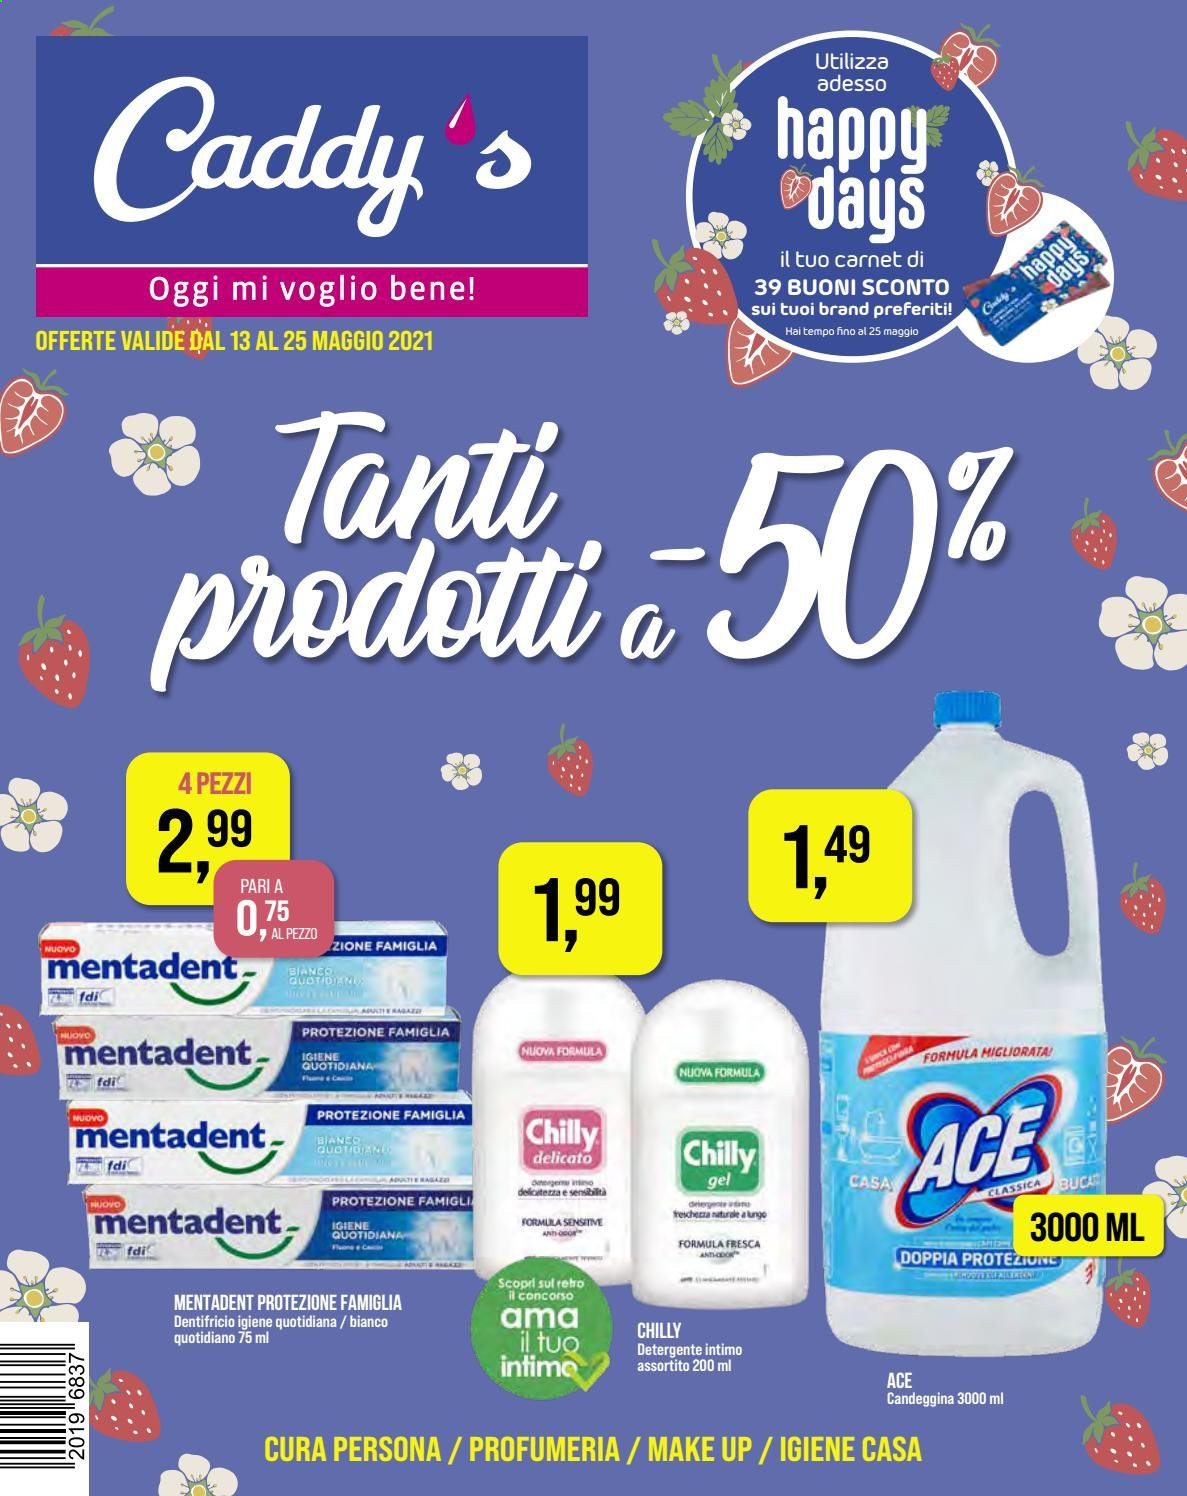 thumbnail - Volantino Caddy's - 13/5/2021 - 25/5/2021 - Prodotti in offerta - Chilly, candeggina, detergente, Ace, detergente intimo, dentifricio, Mentadent. Pagina 1.